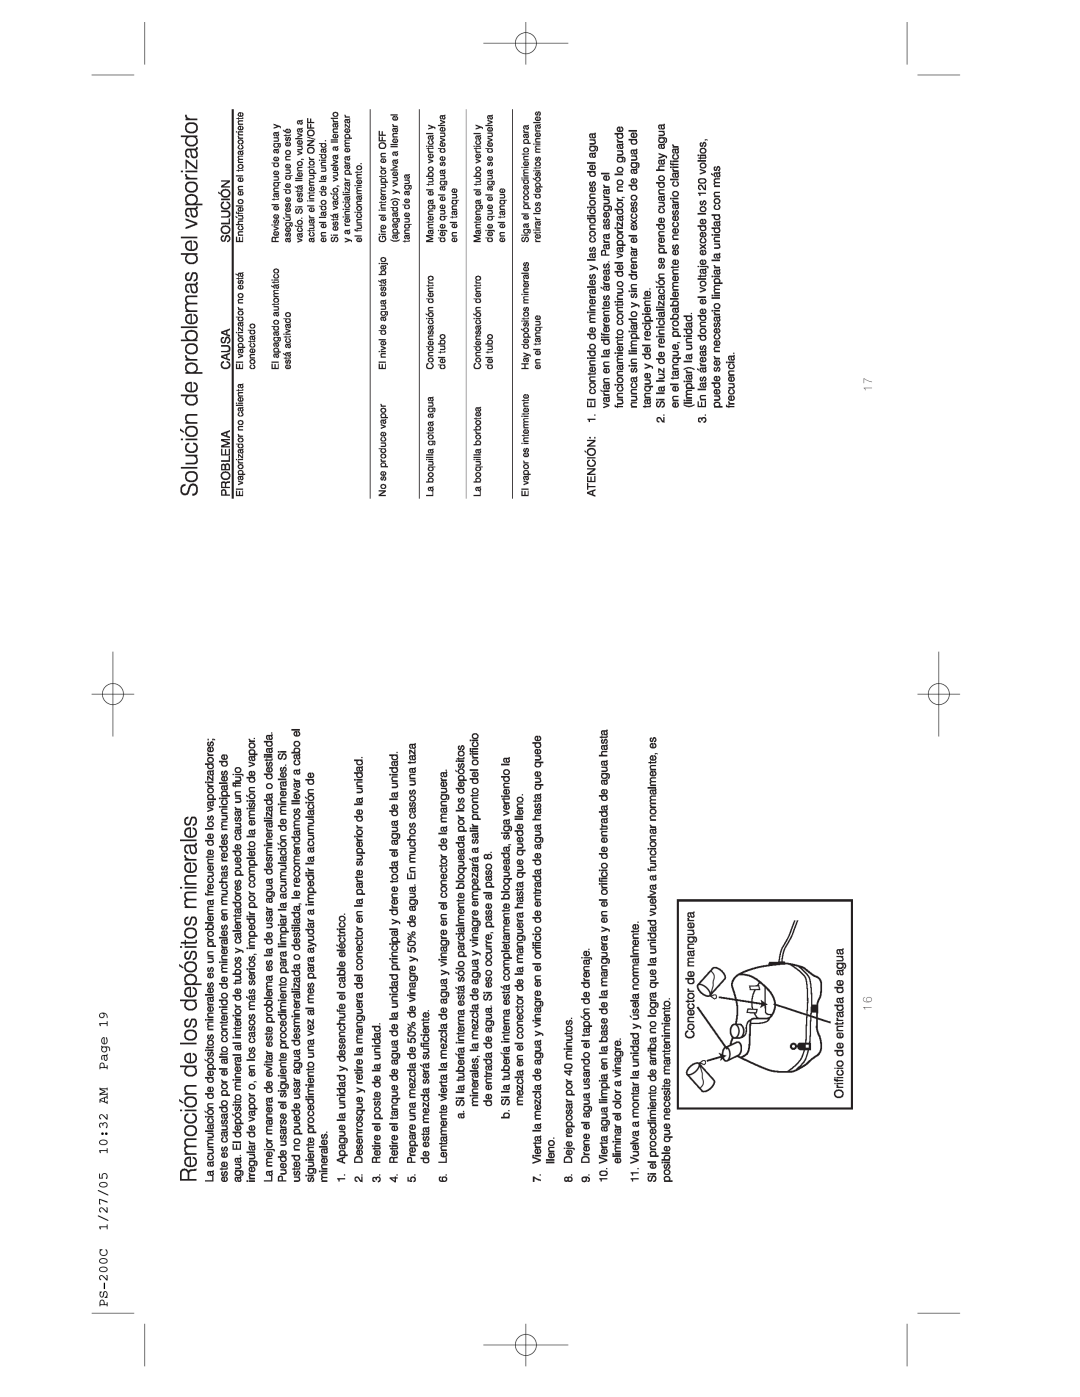 HoMedics Remoción de los depósitos minerales, Solución de problemas del vaporizador, PS-200C1/27/05 10 32 AM Page 